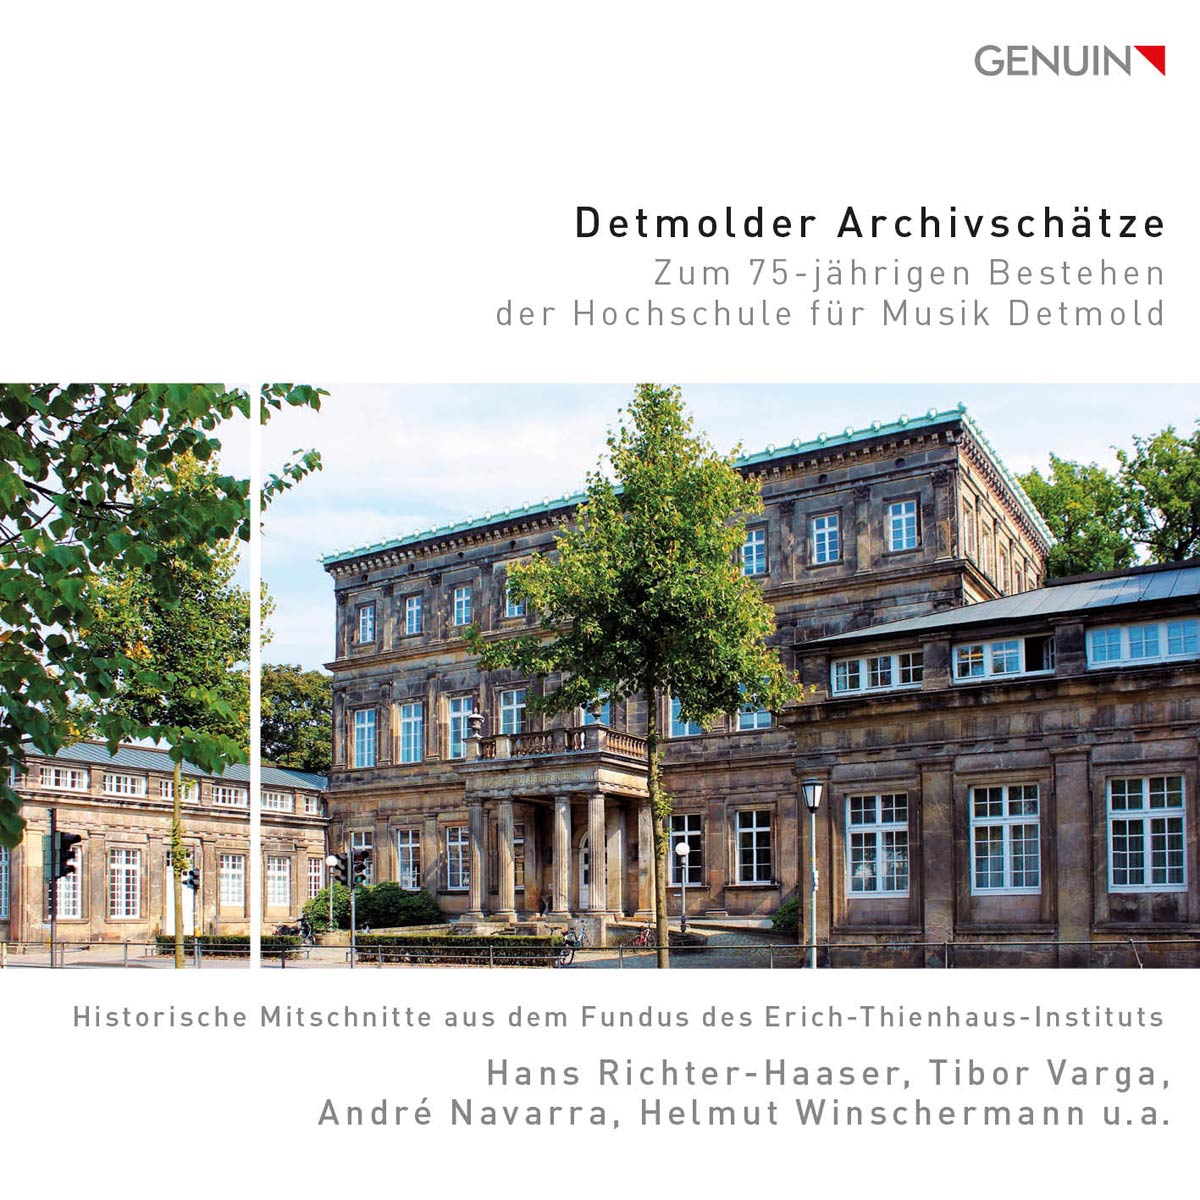 CD album cover 'Detmolder Archivschätze (4 CDs)' (GEN 21761) with 